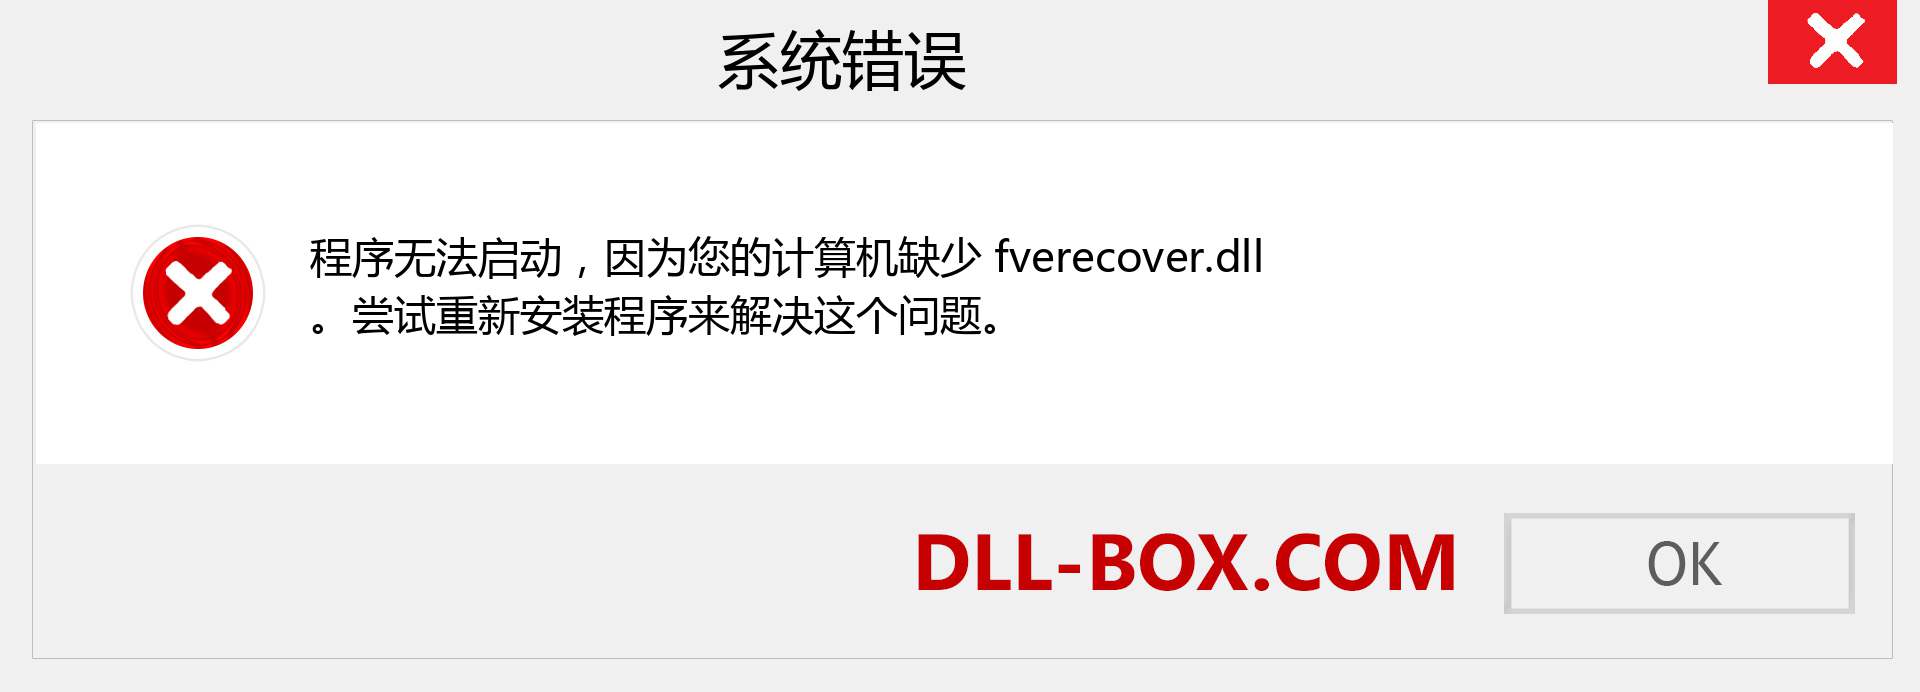 fverecover.dll 文件丢失？。 适用于 Windows 7、8、10 的下载 - 修复 Windows、照片、图像上的 fverecover dll 丢失错误